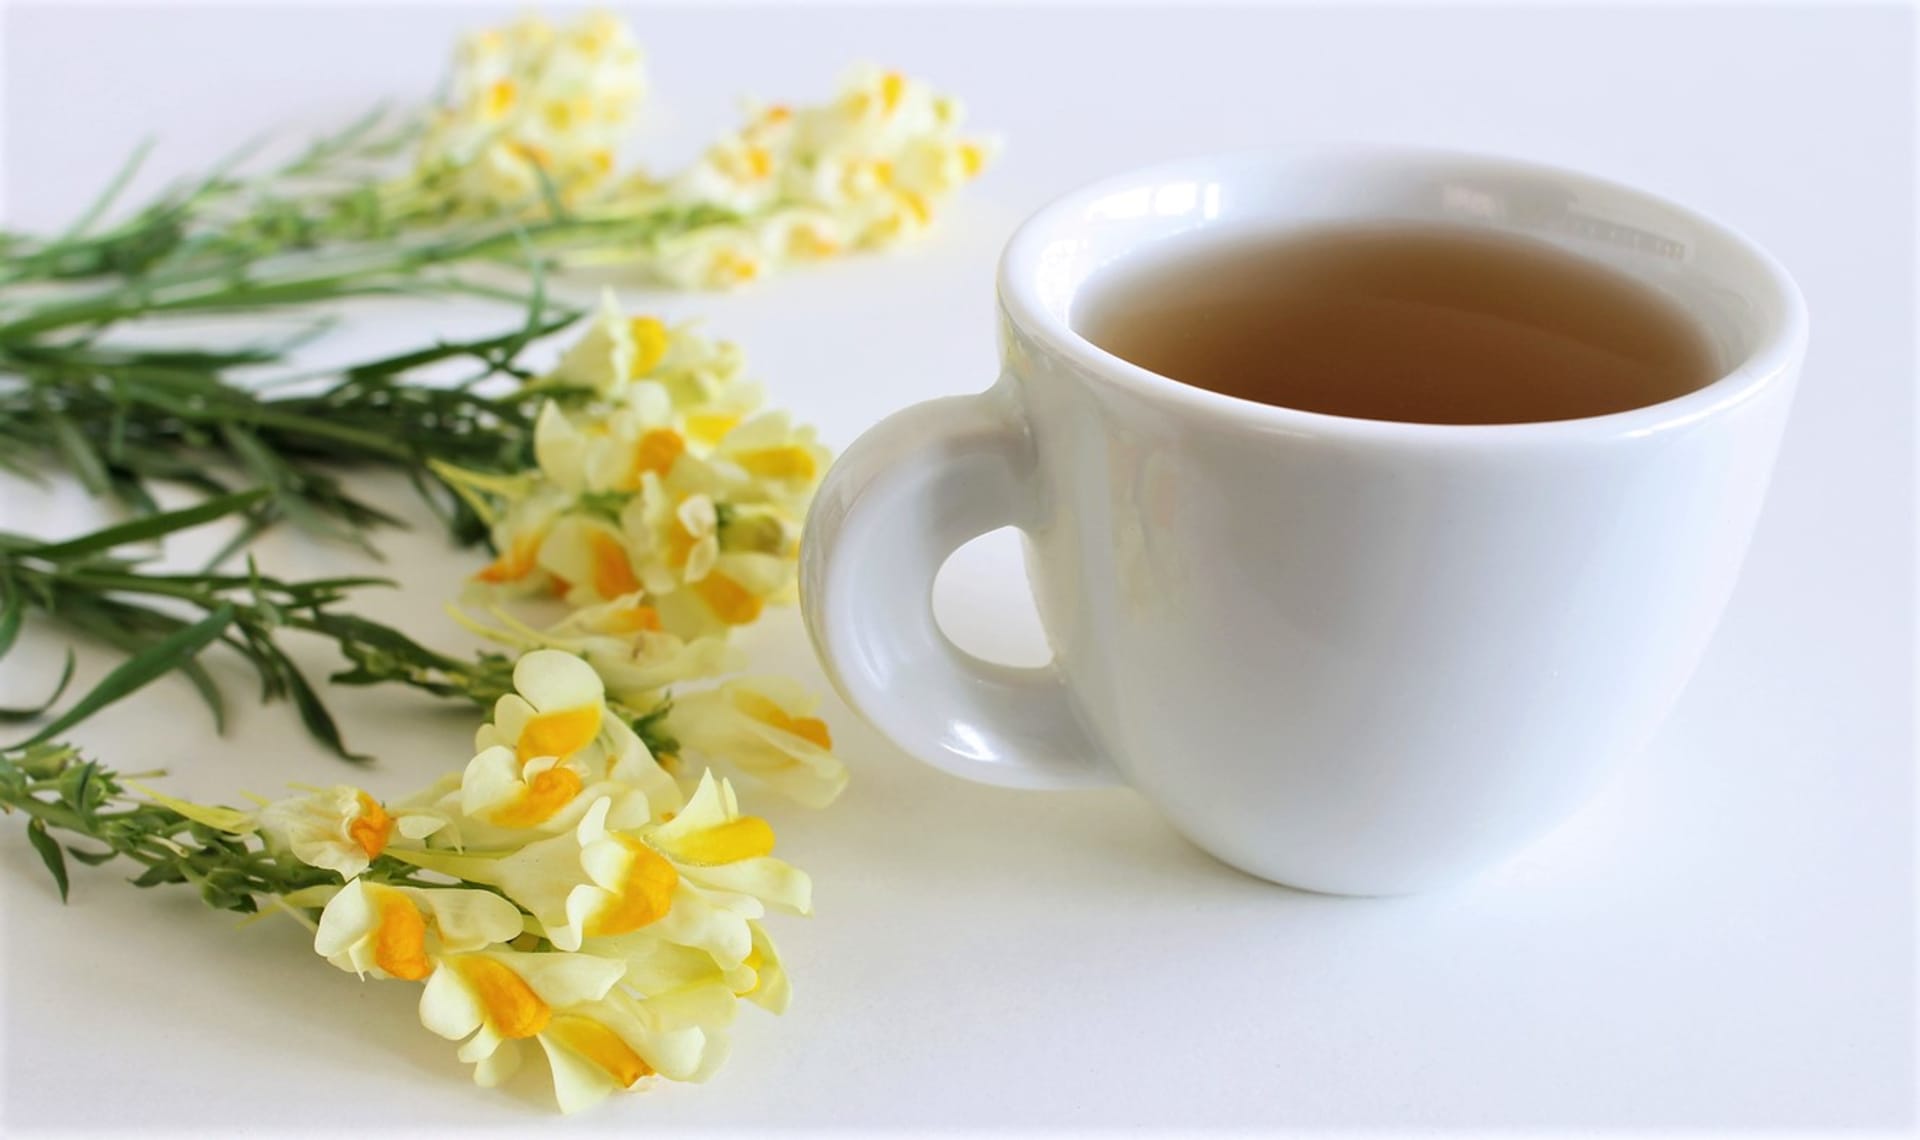 Čaj pijeme teplý až vlažný dvakrát denně po jídle nebo toto množství vypijeme během dne po doušcích.